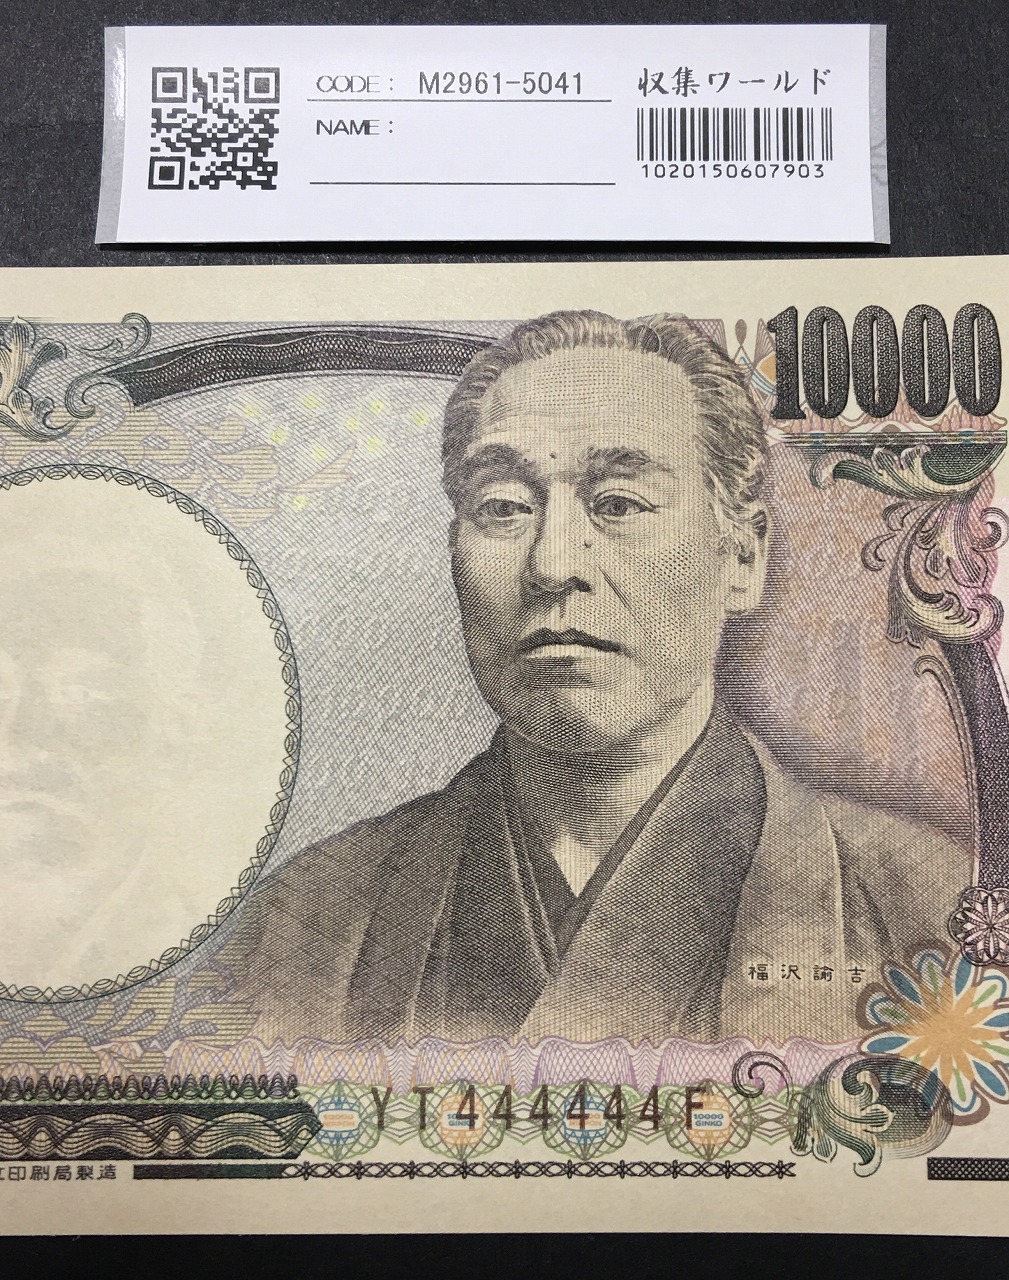 新福沢 1万円紙幣 国立印刷局 褐色 珍番 YT444444F 完未品